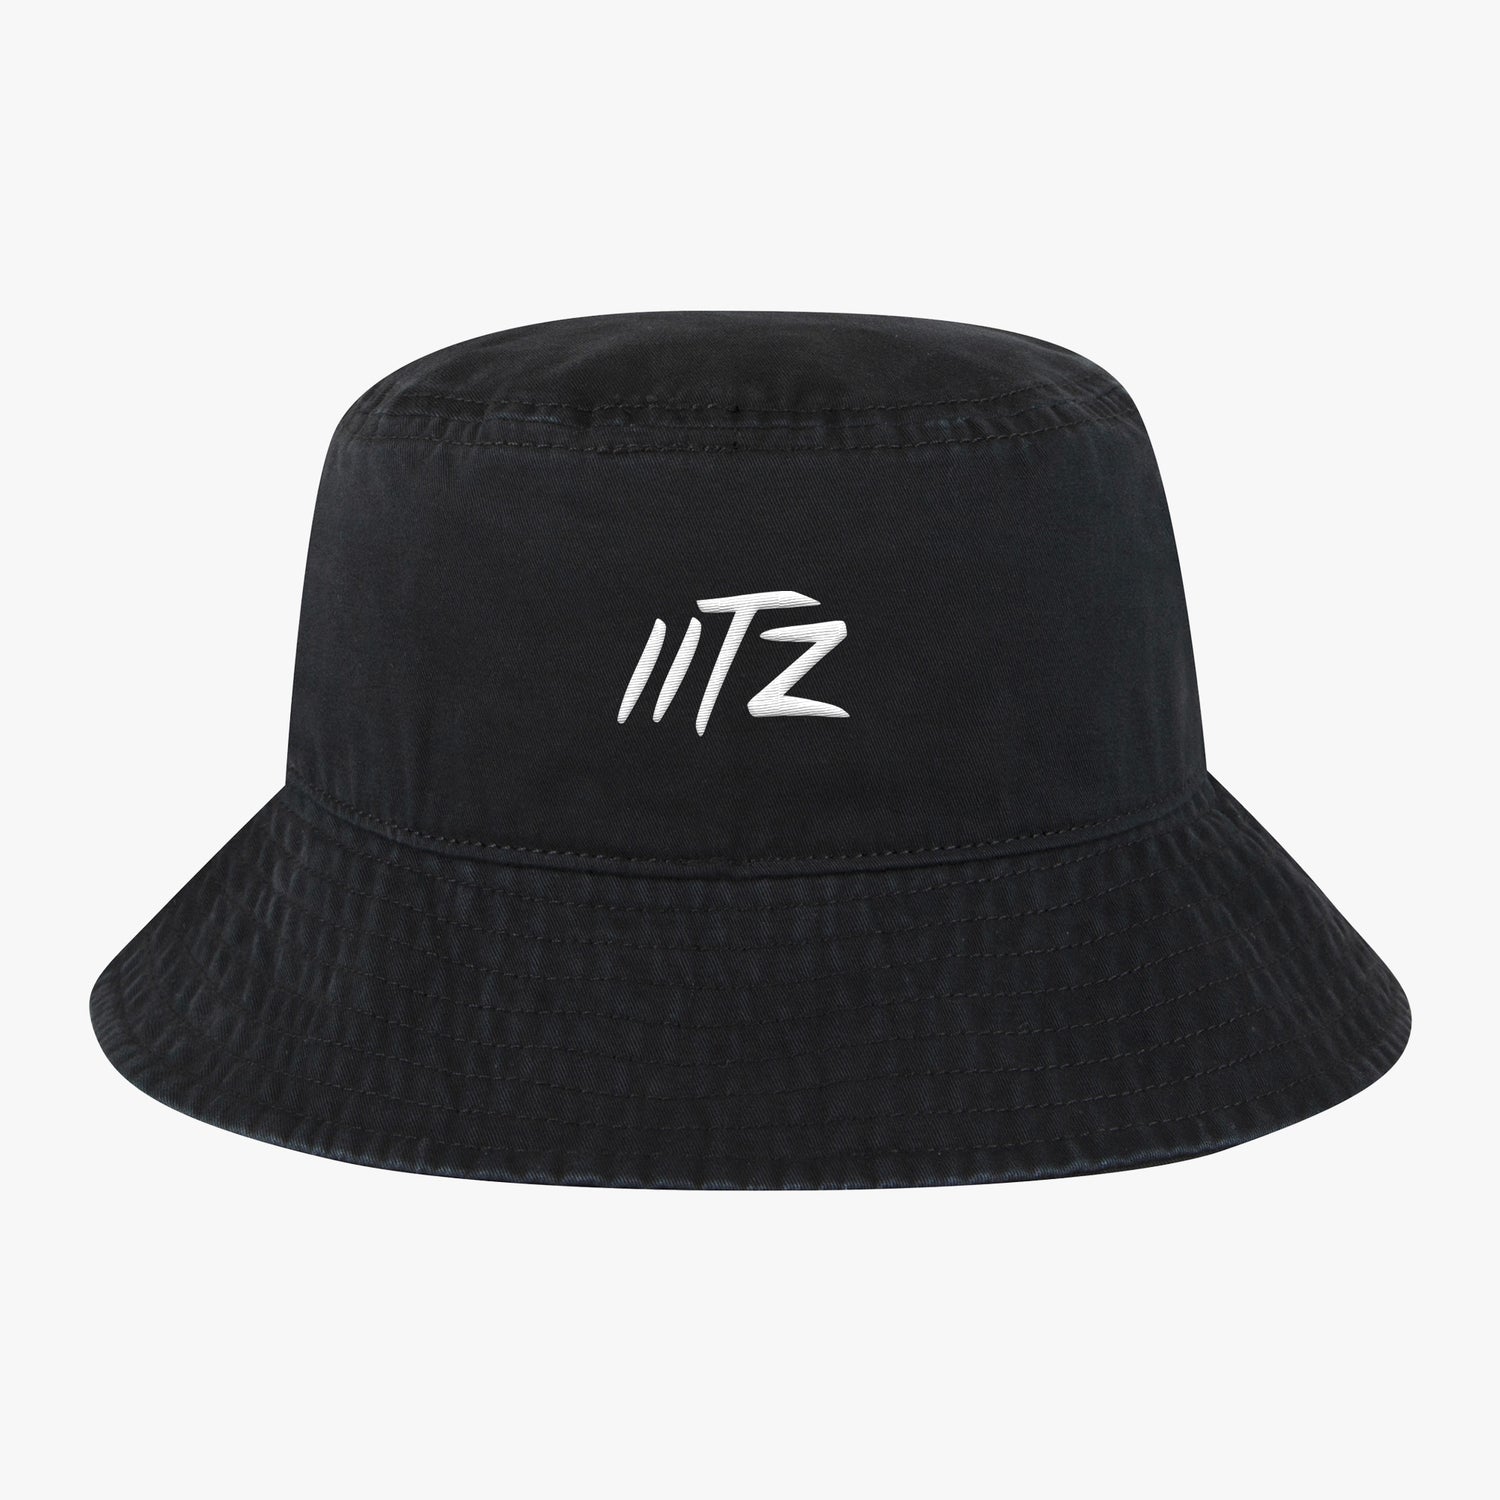 iiTz Bucket Hat